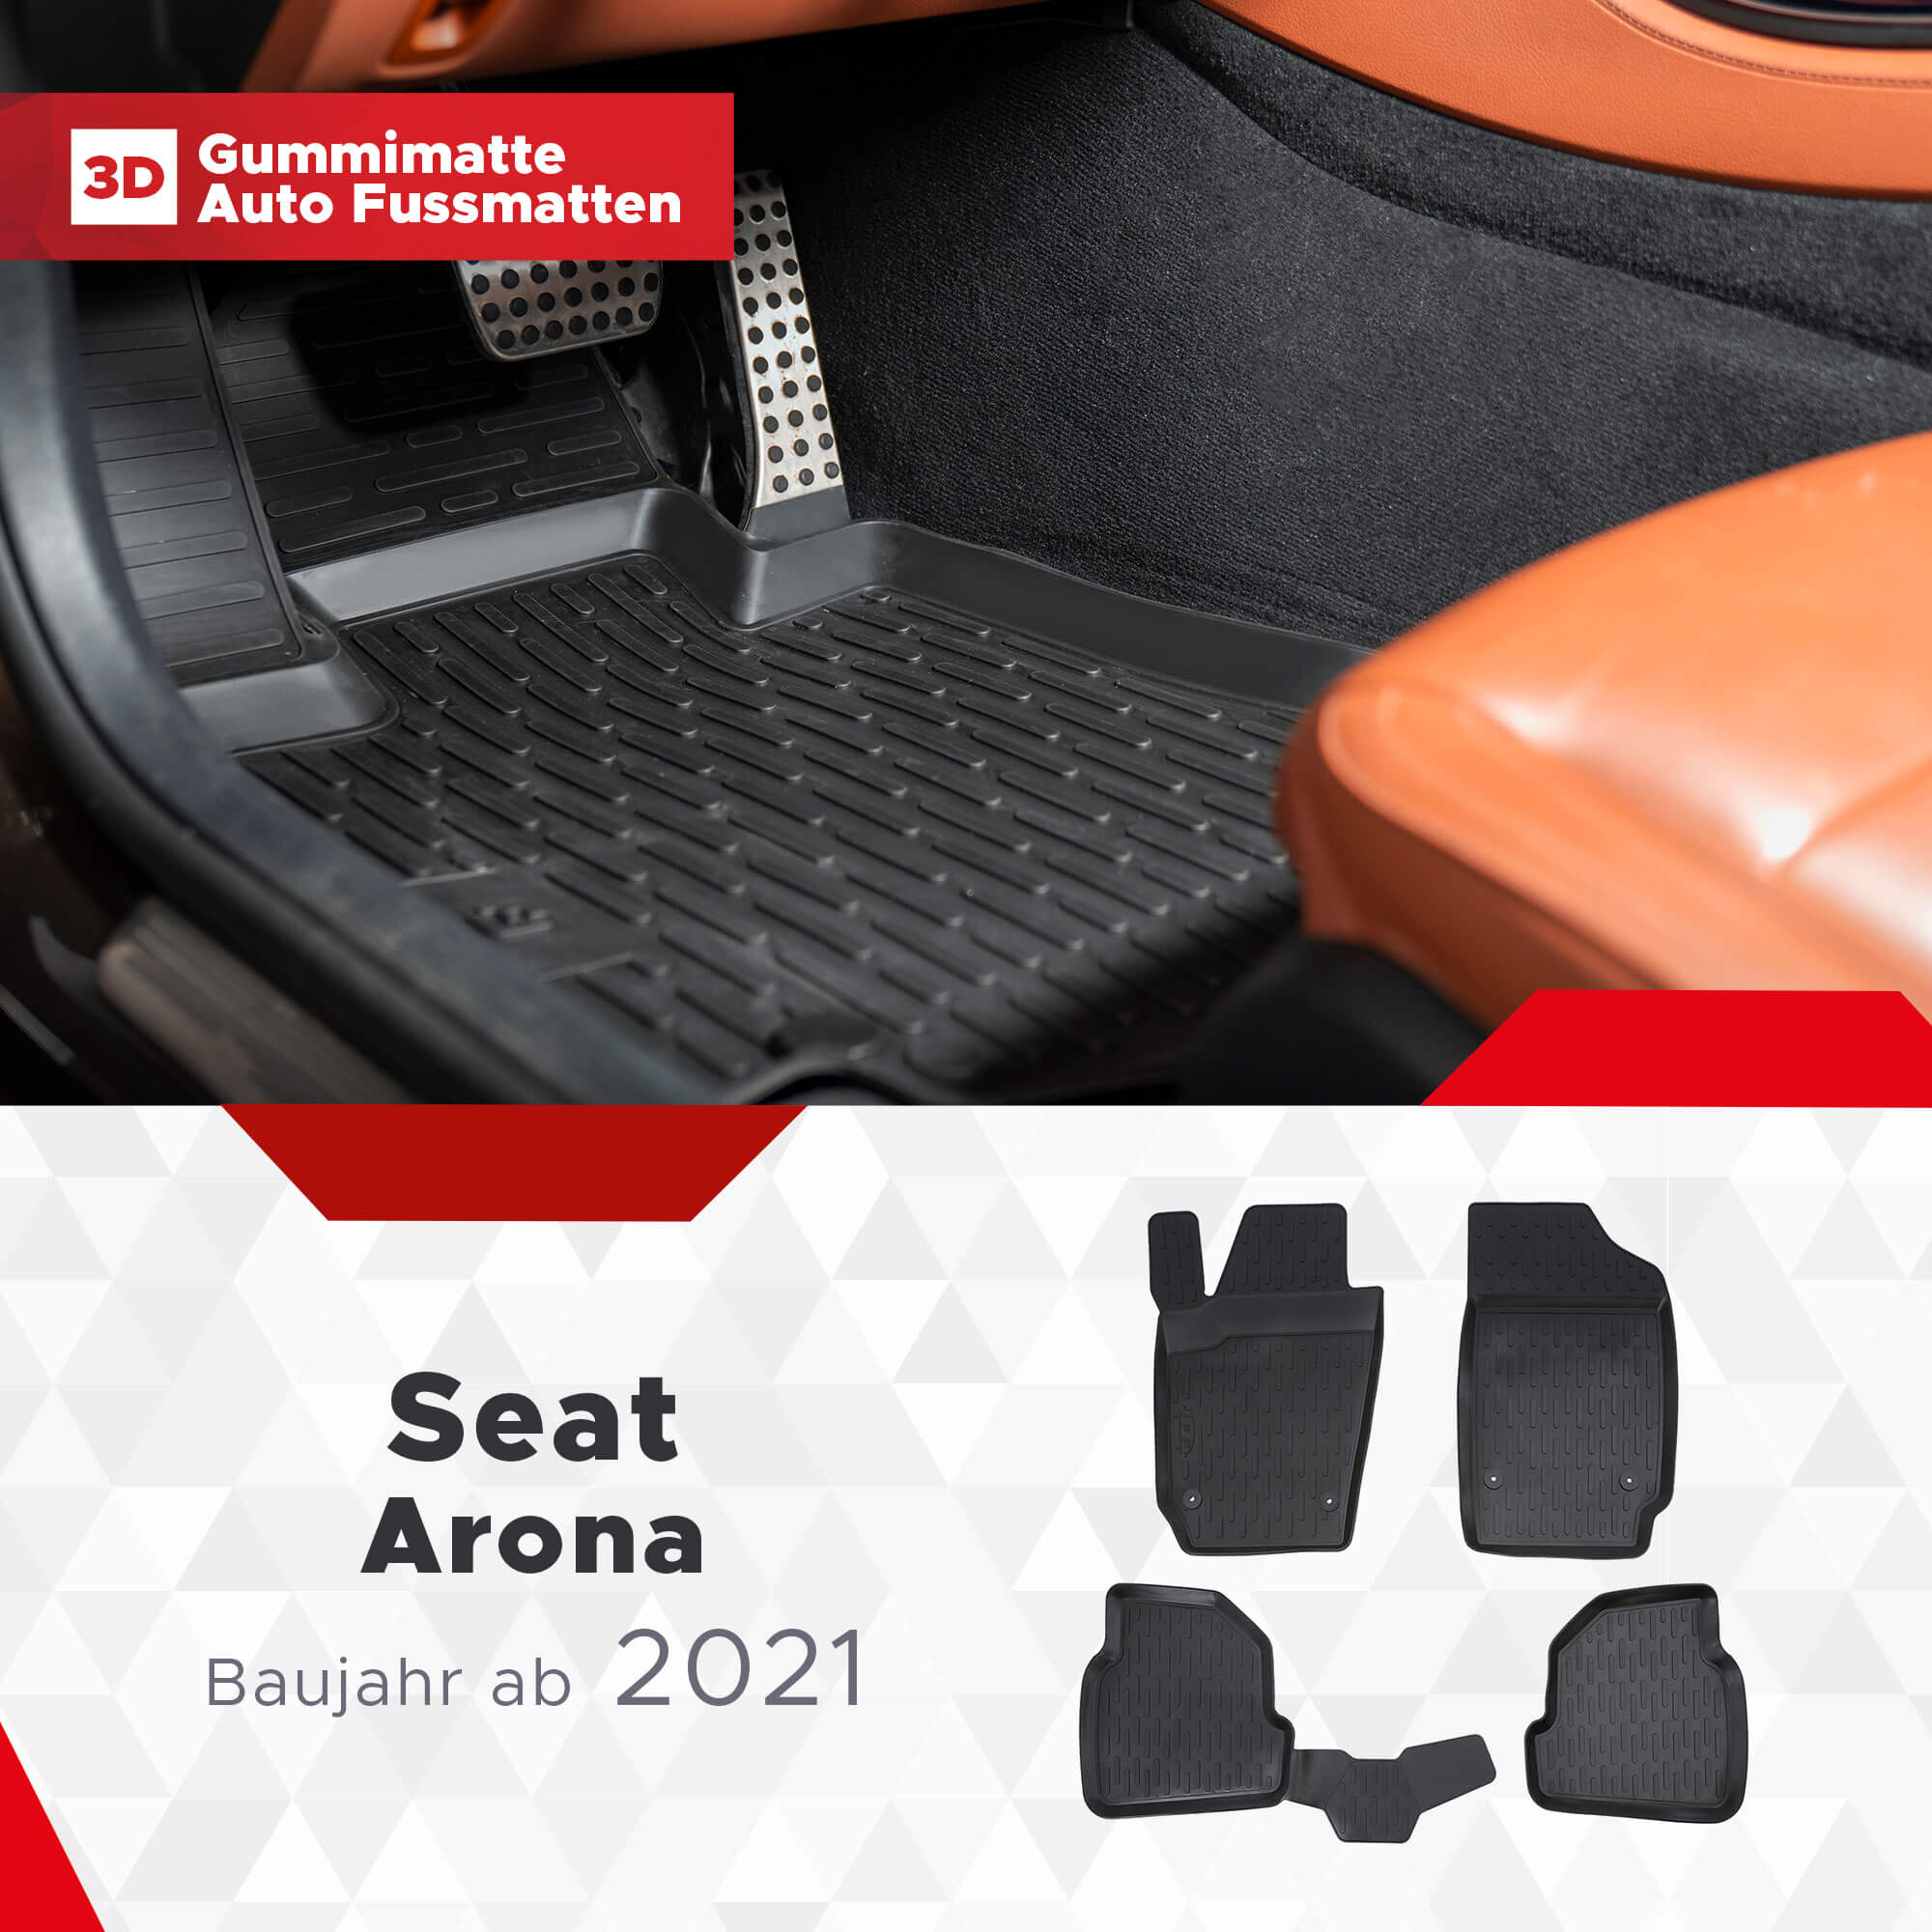 3D Fußmatten passend für Seat Arona ab 2021